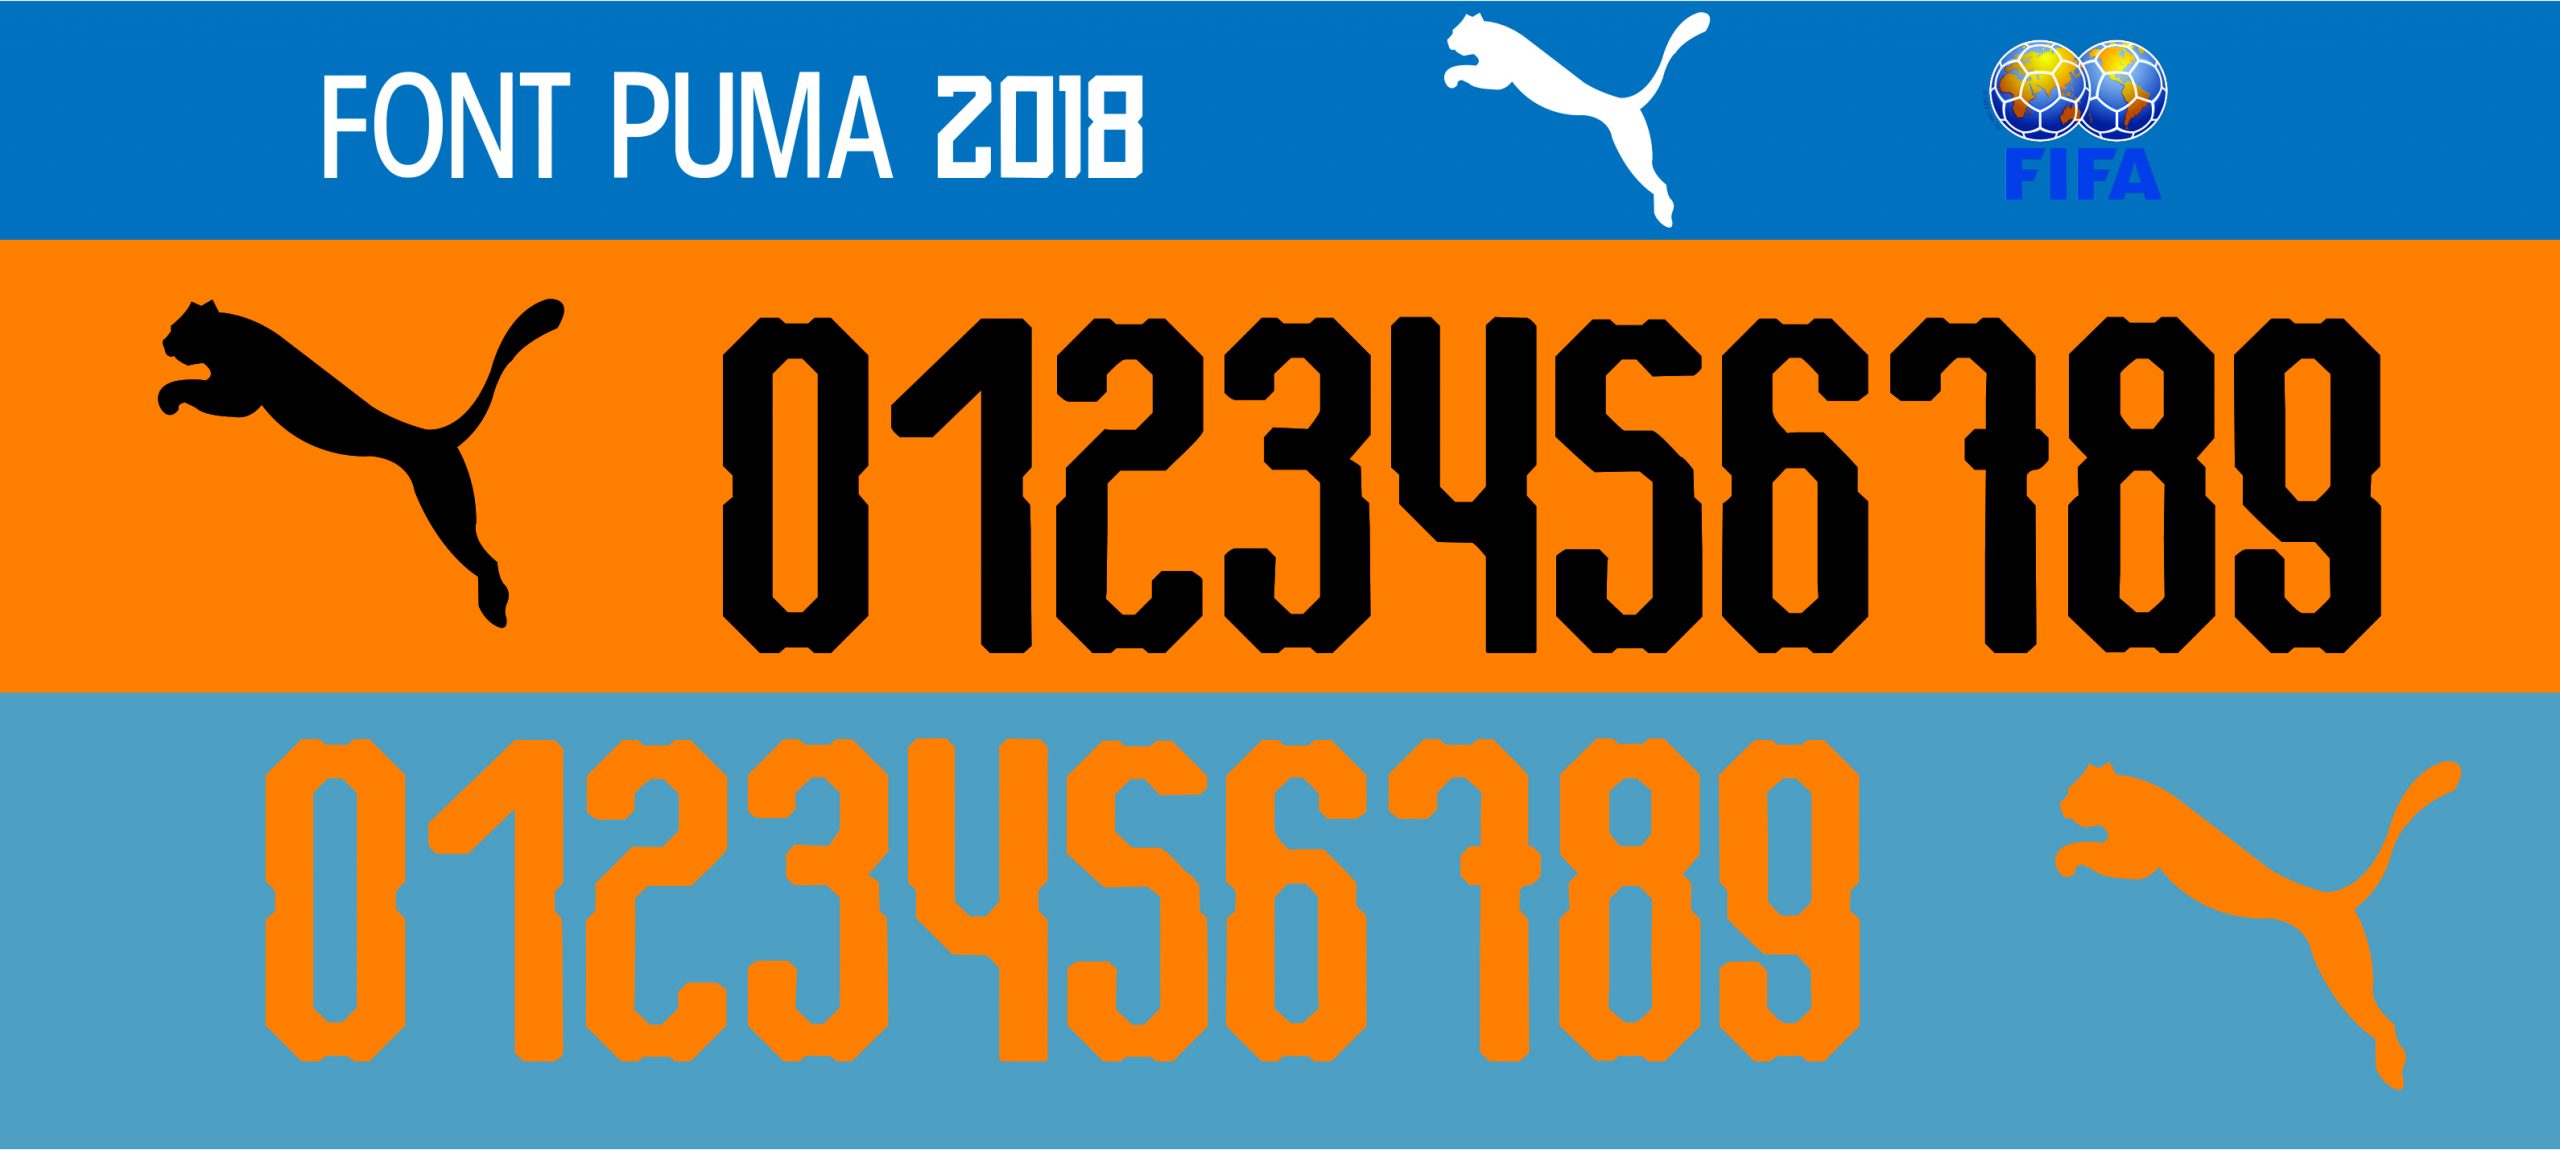 Font Puma 2018